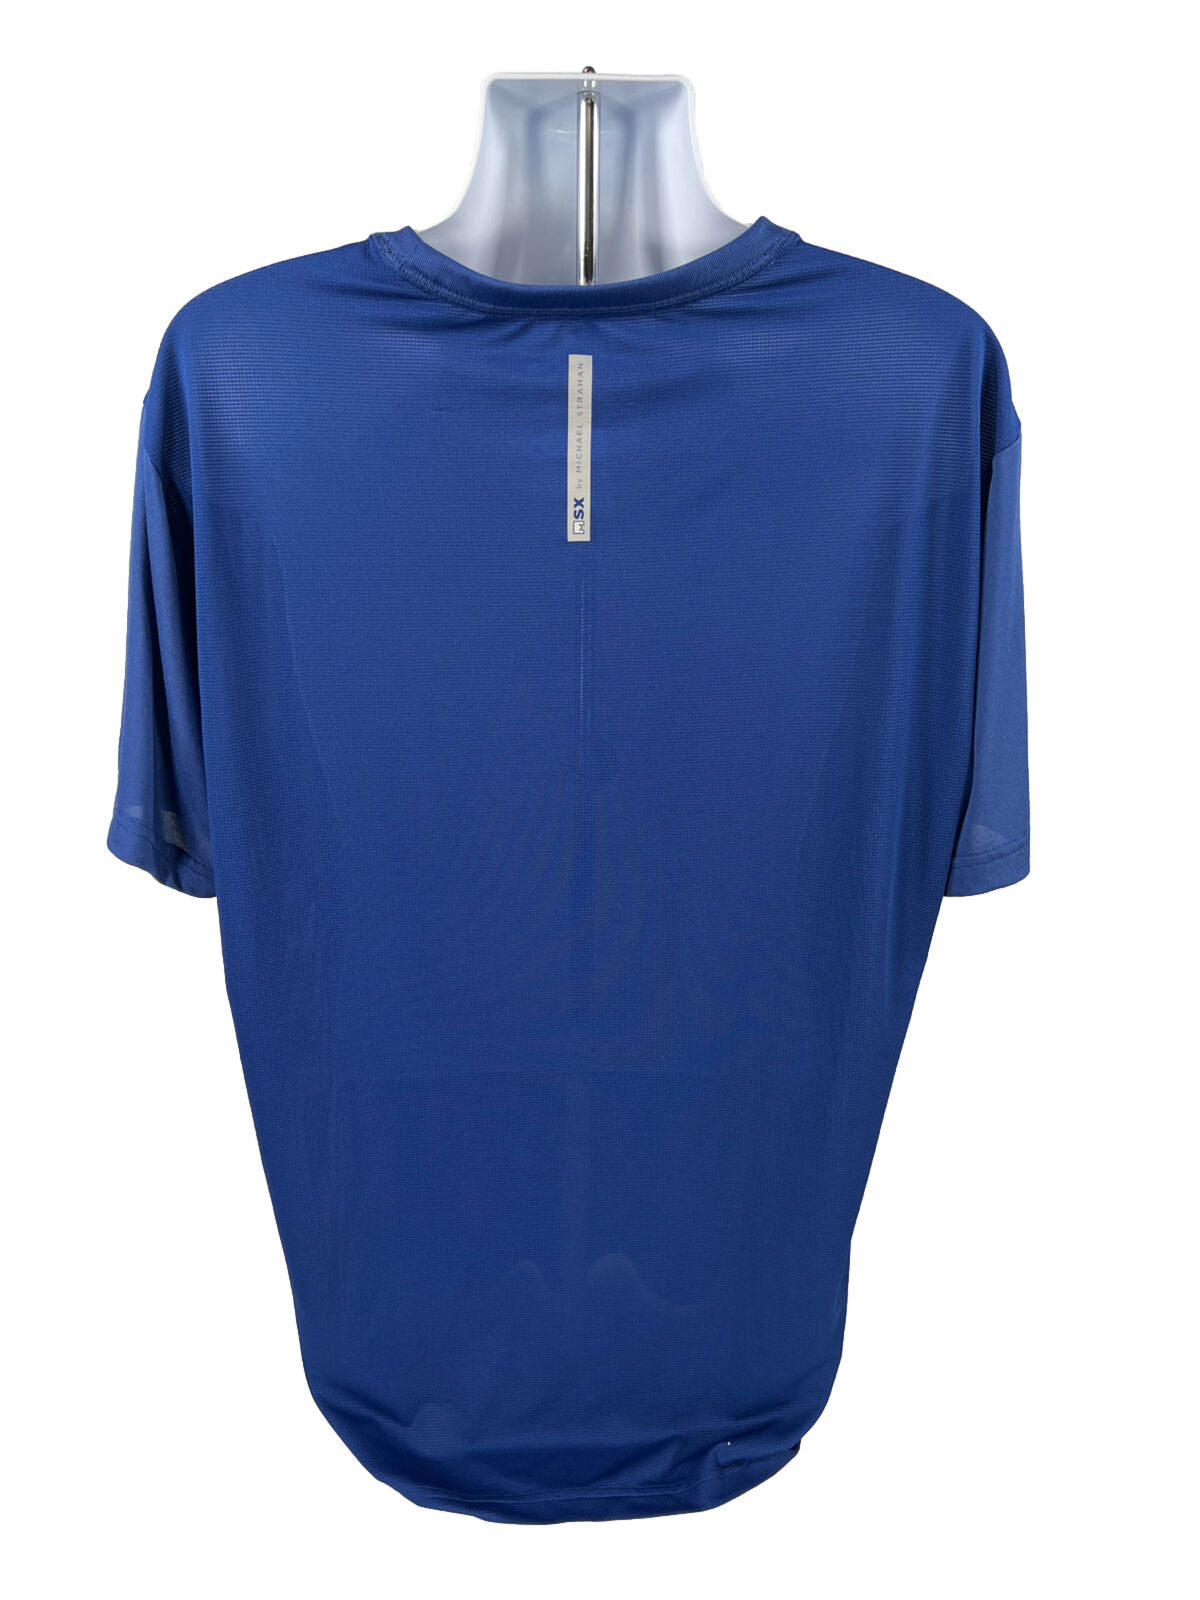 NEW MSX Michael Strahan Men's Blue Short Sleeve Athletic Shirt - Tall XLT